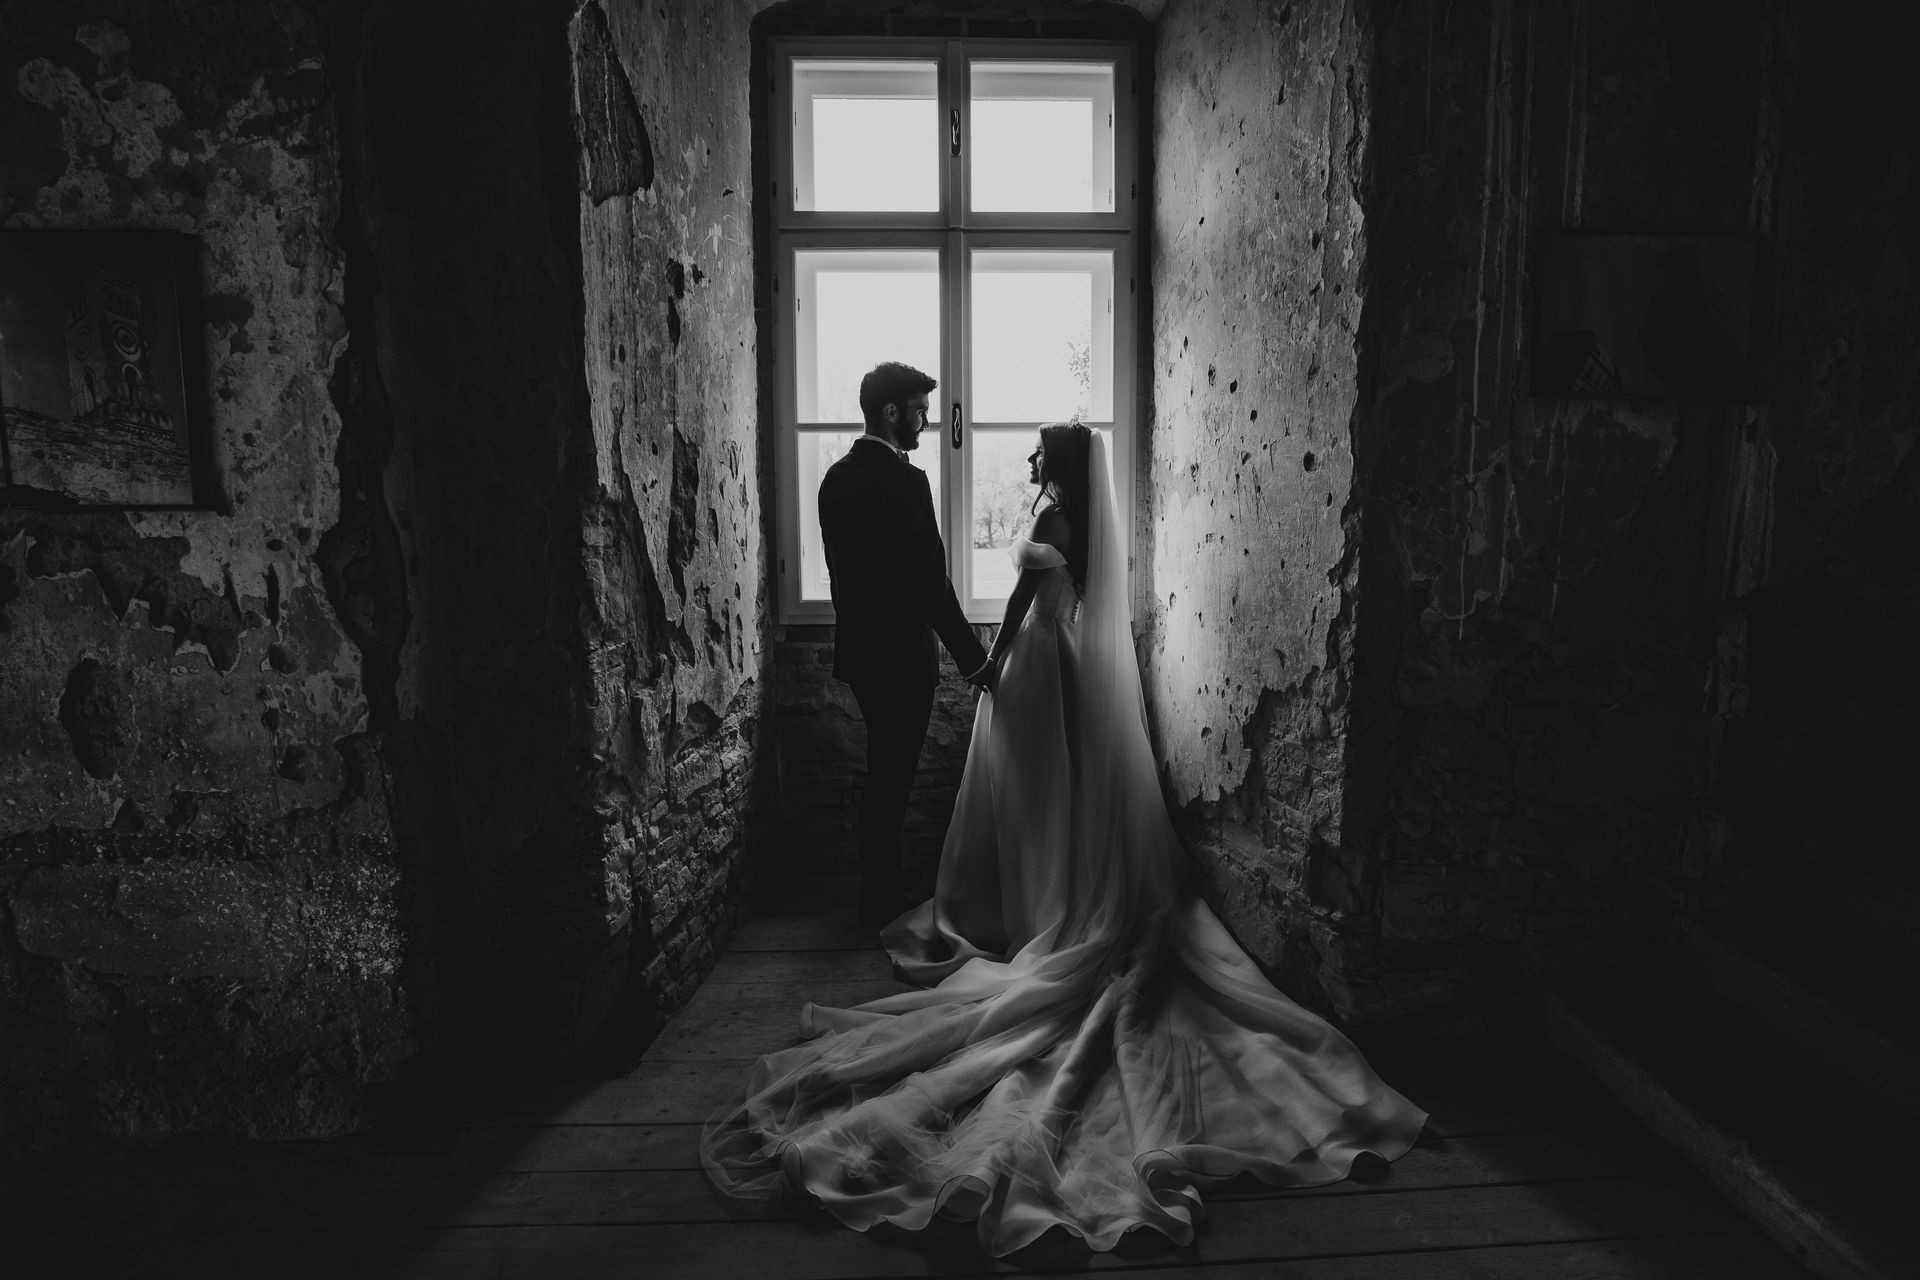 O imagine eternă a iubirii: Doi miri îndrăgostiți, capturați într-o fotografie alb-negru, exprimând tandrețe și complicitate într-o călătorie de viață împreună.